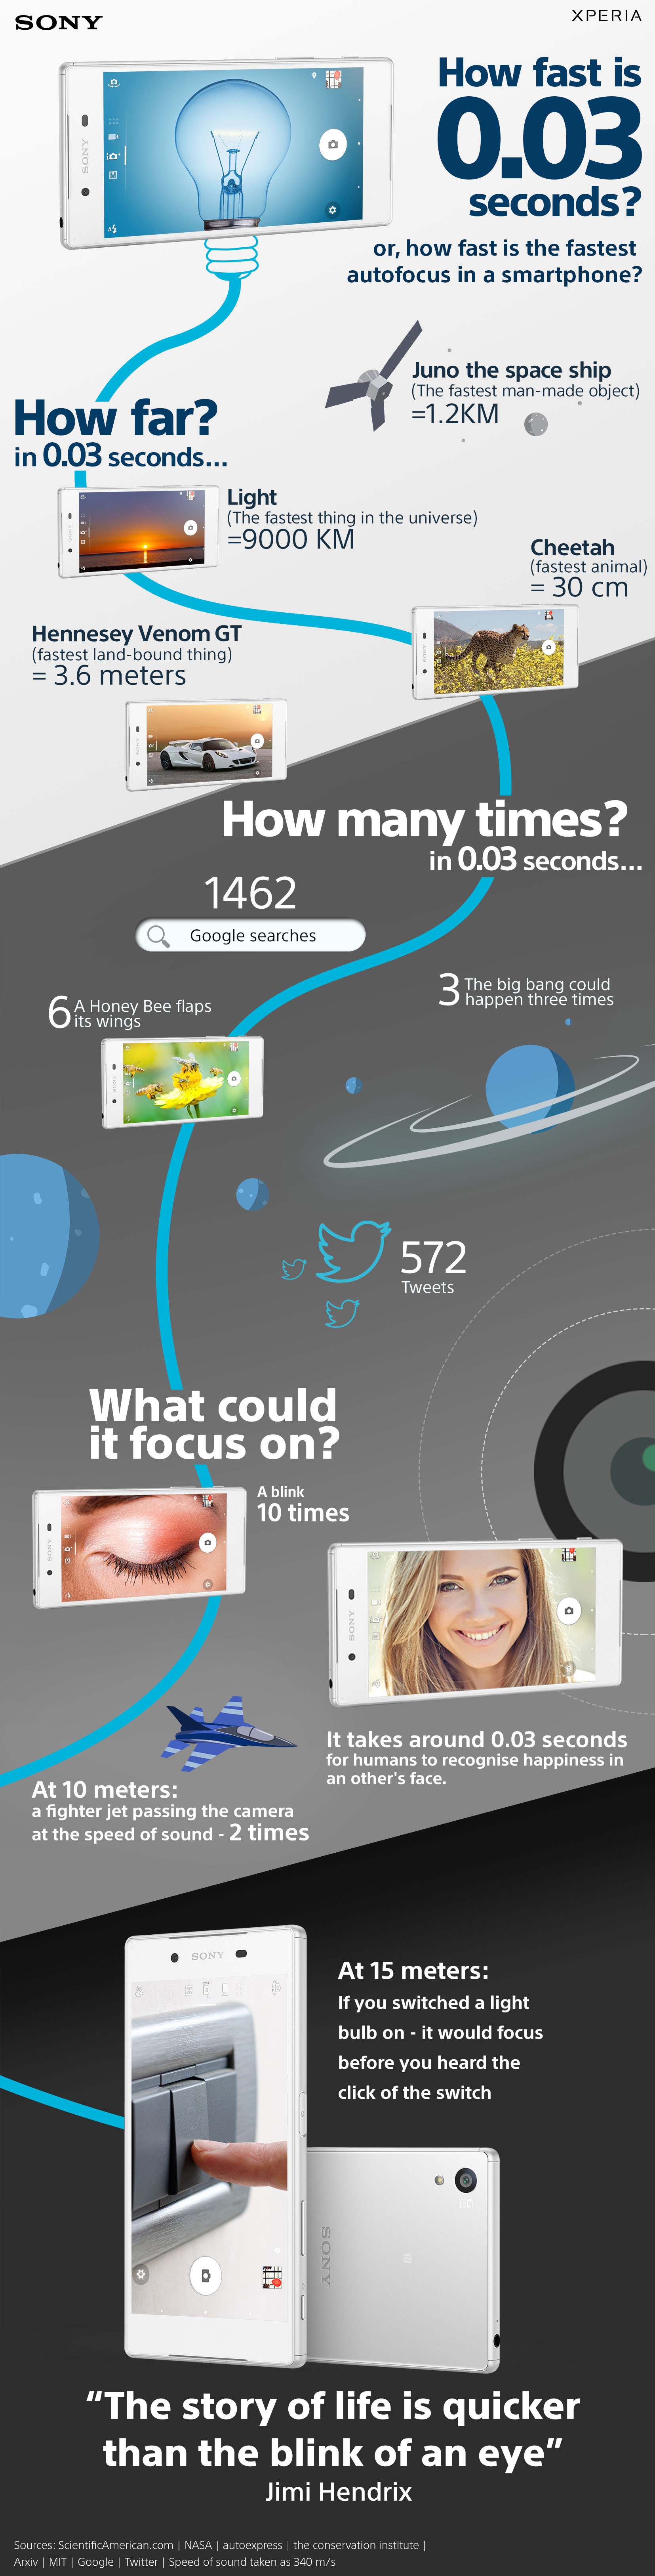 fast_autofocus_infographic